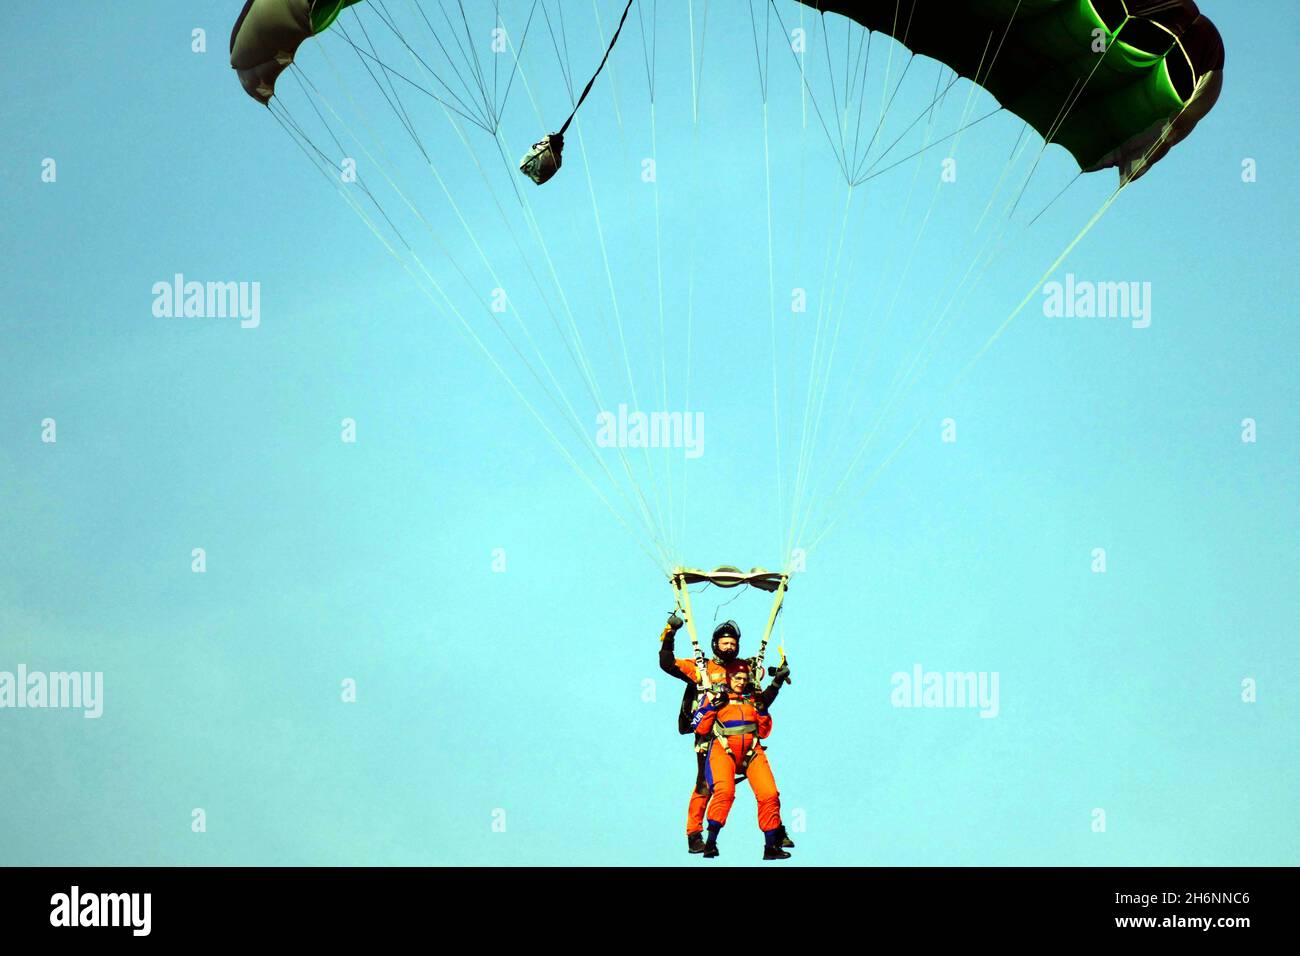 ODESA, UKRAINE - 16 NOVEMBRE 2021 - les participants font un saut en tandem pendant la compétition de parachutisme au Odesa Flying Club, Odesa, dans le sud de l'Ukraine Banque D'Images